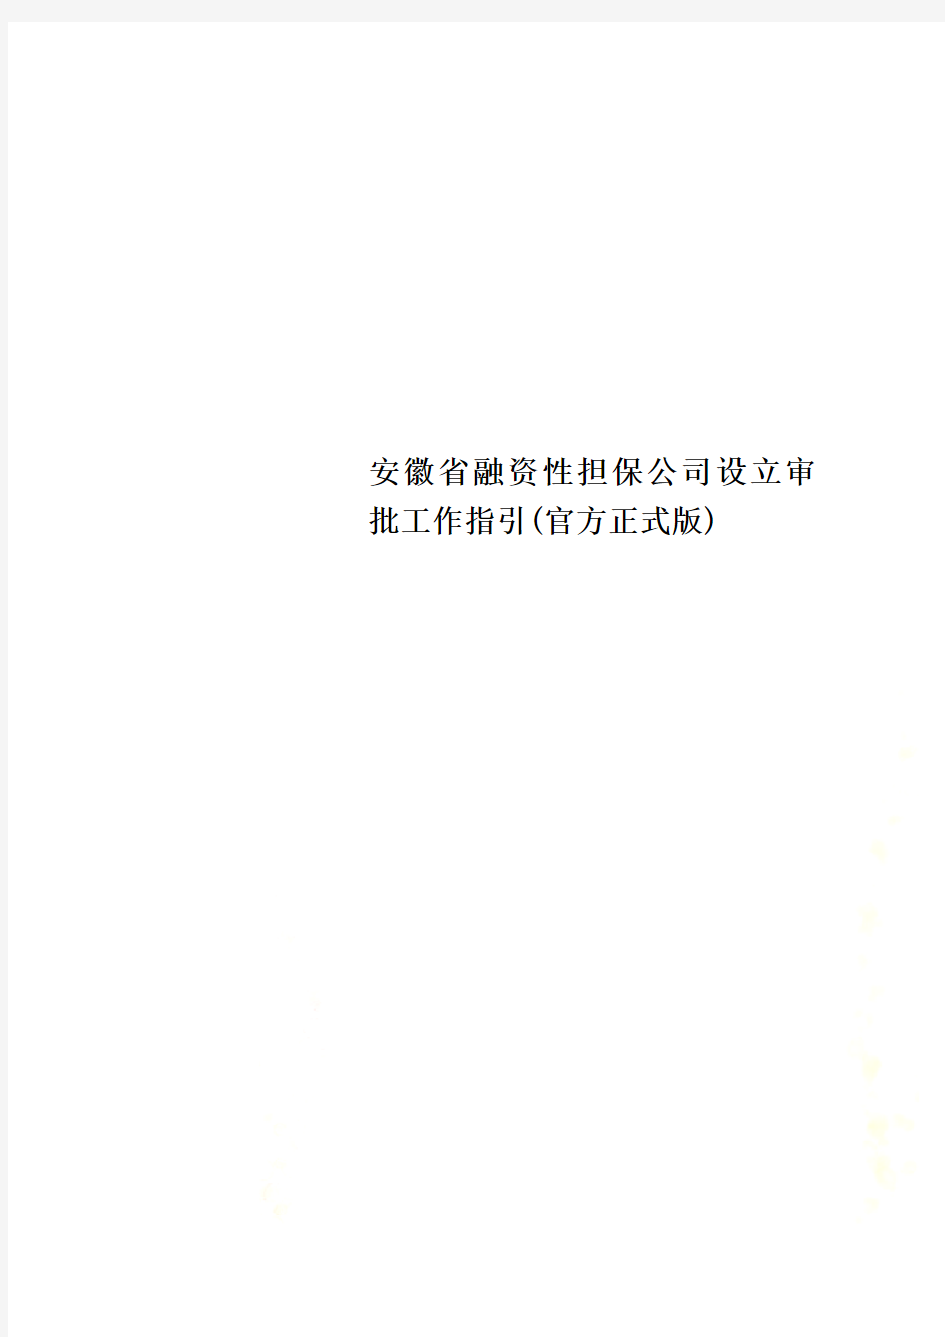 安徽省融资性担保公司设立审批工作指引(官方正式版)